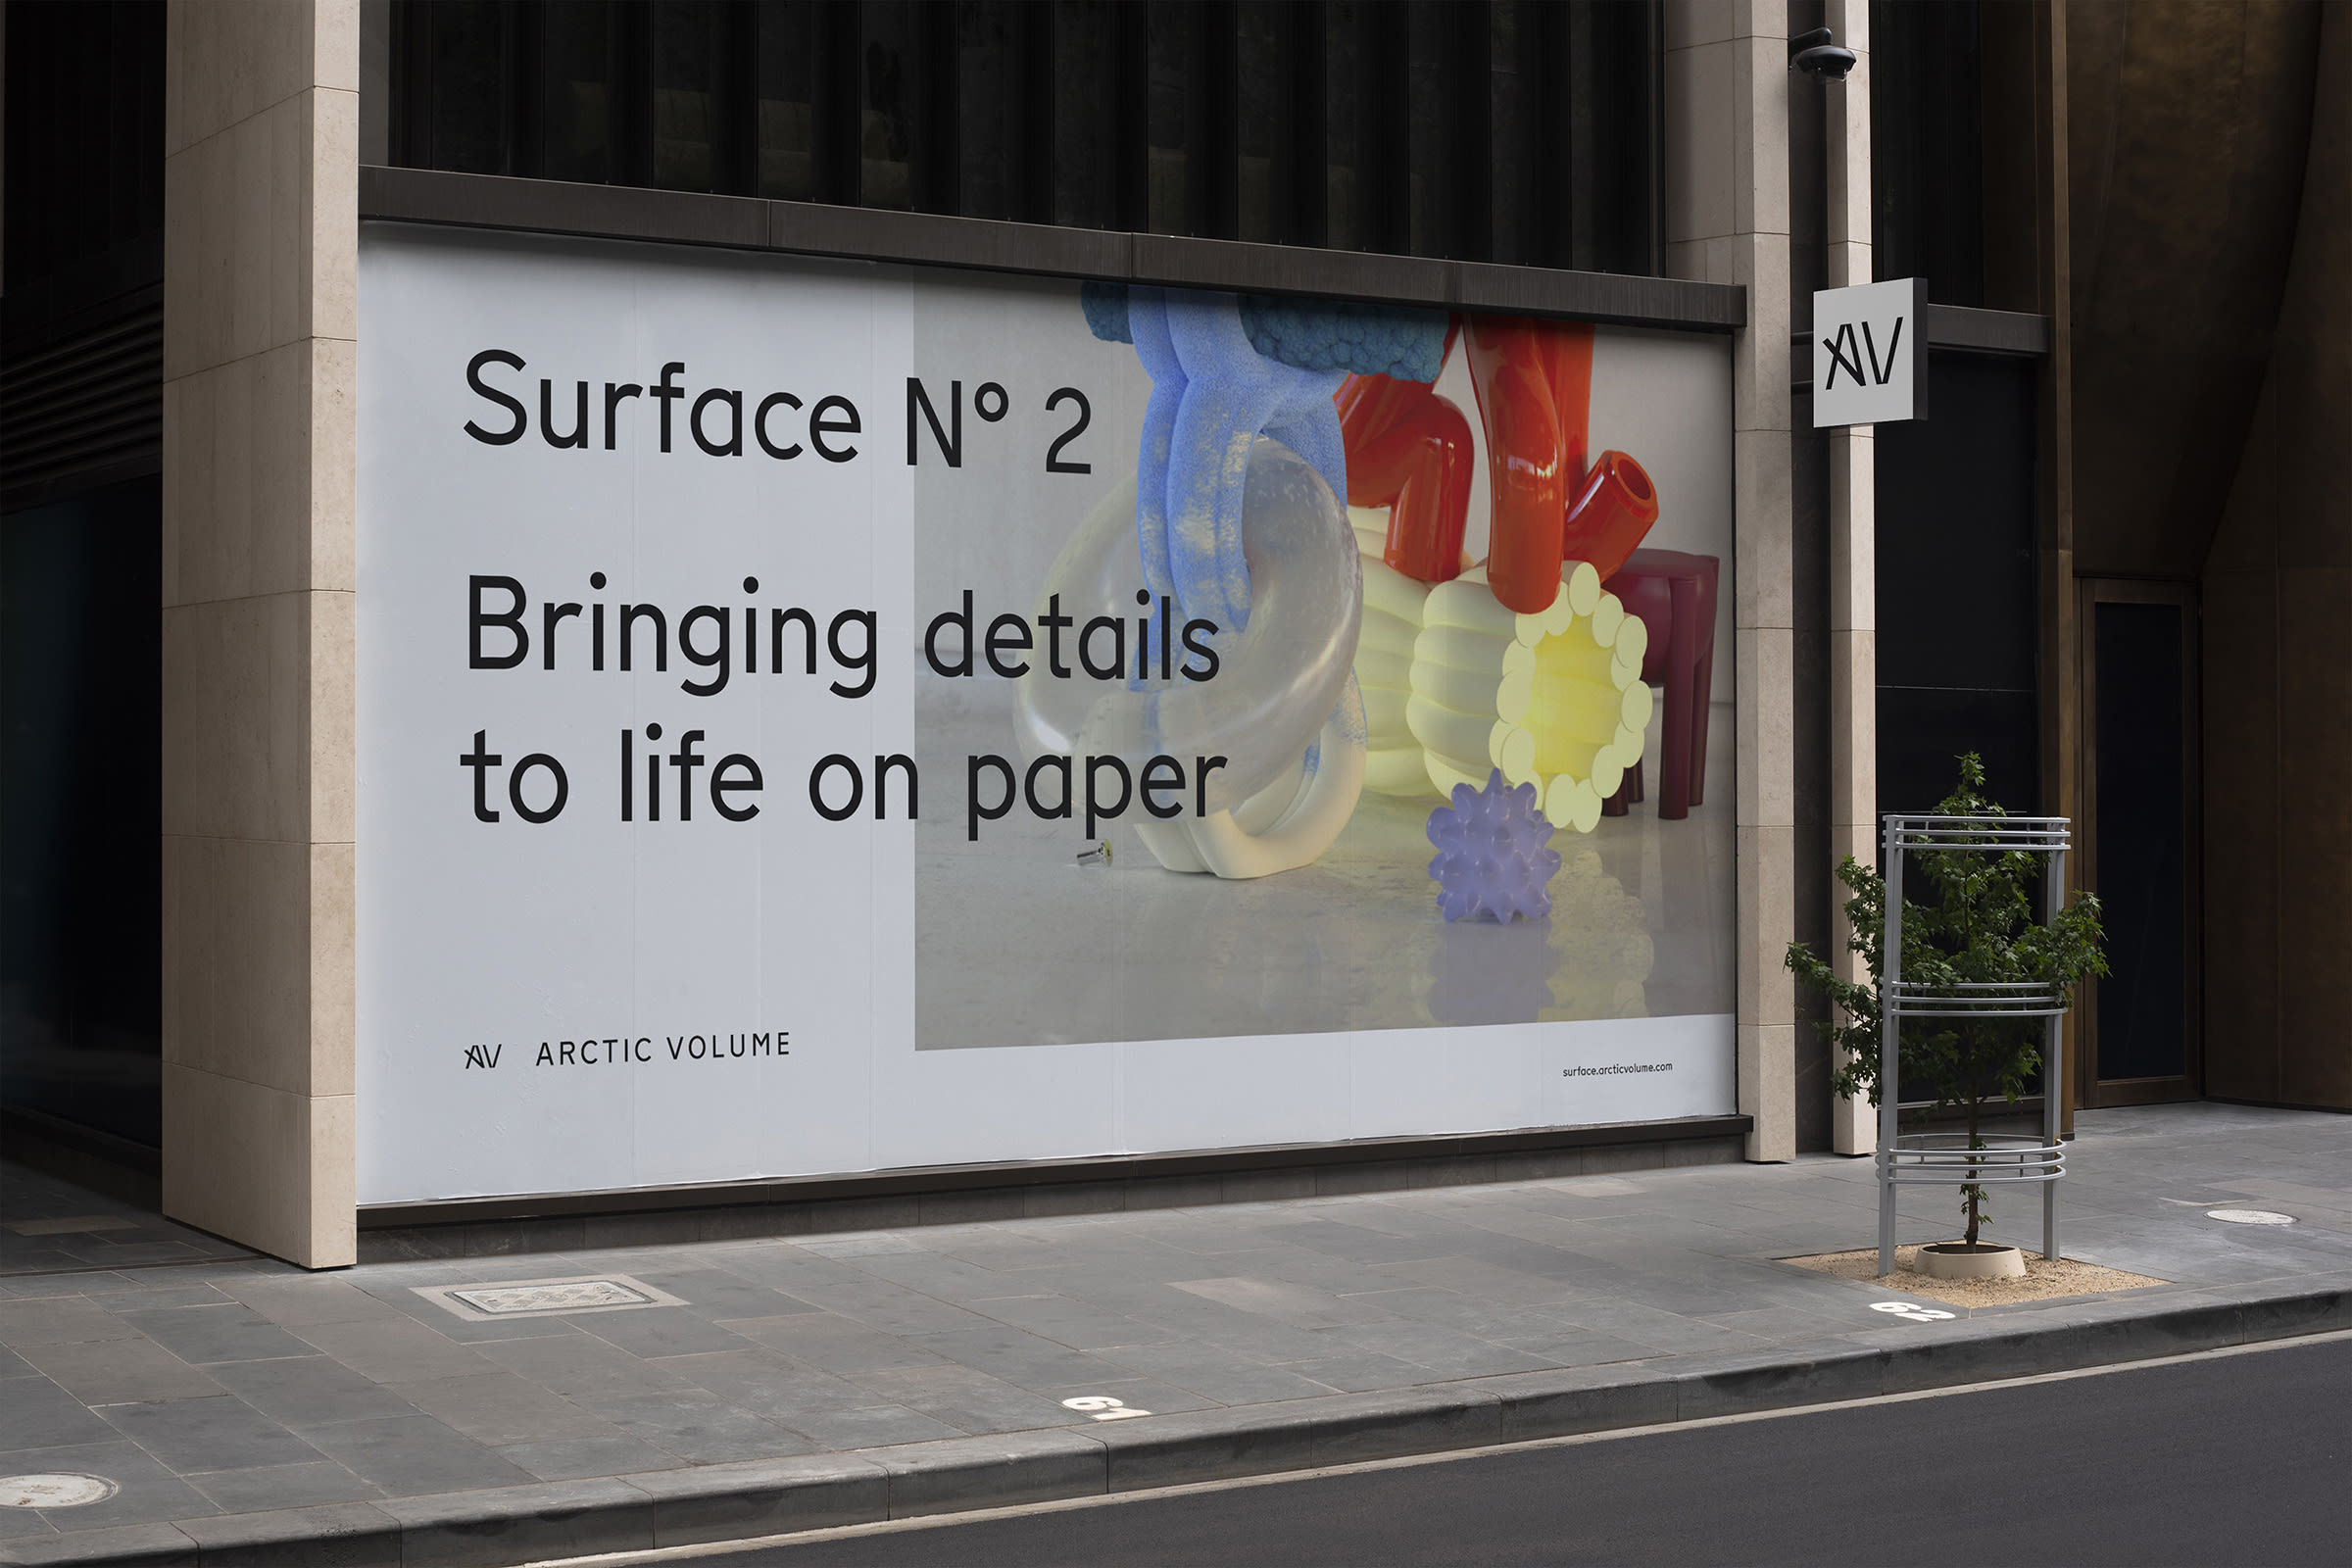 Billboard-Mockup mit Surface N°2-Plakat